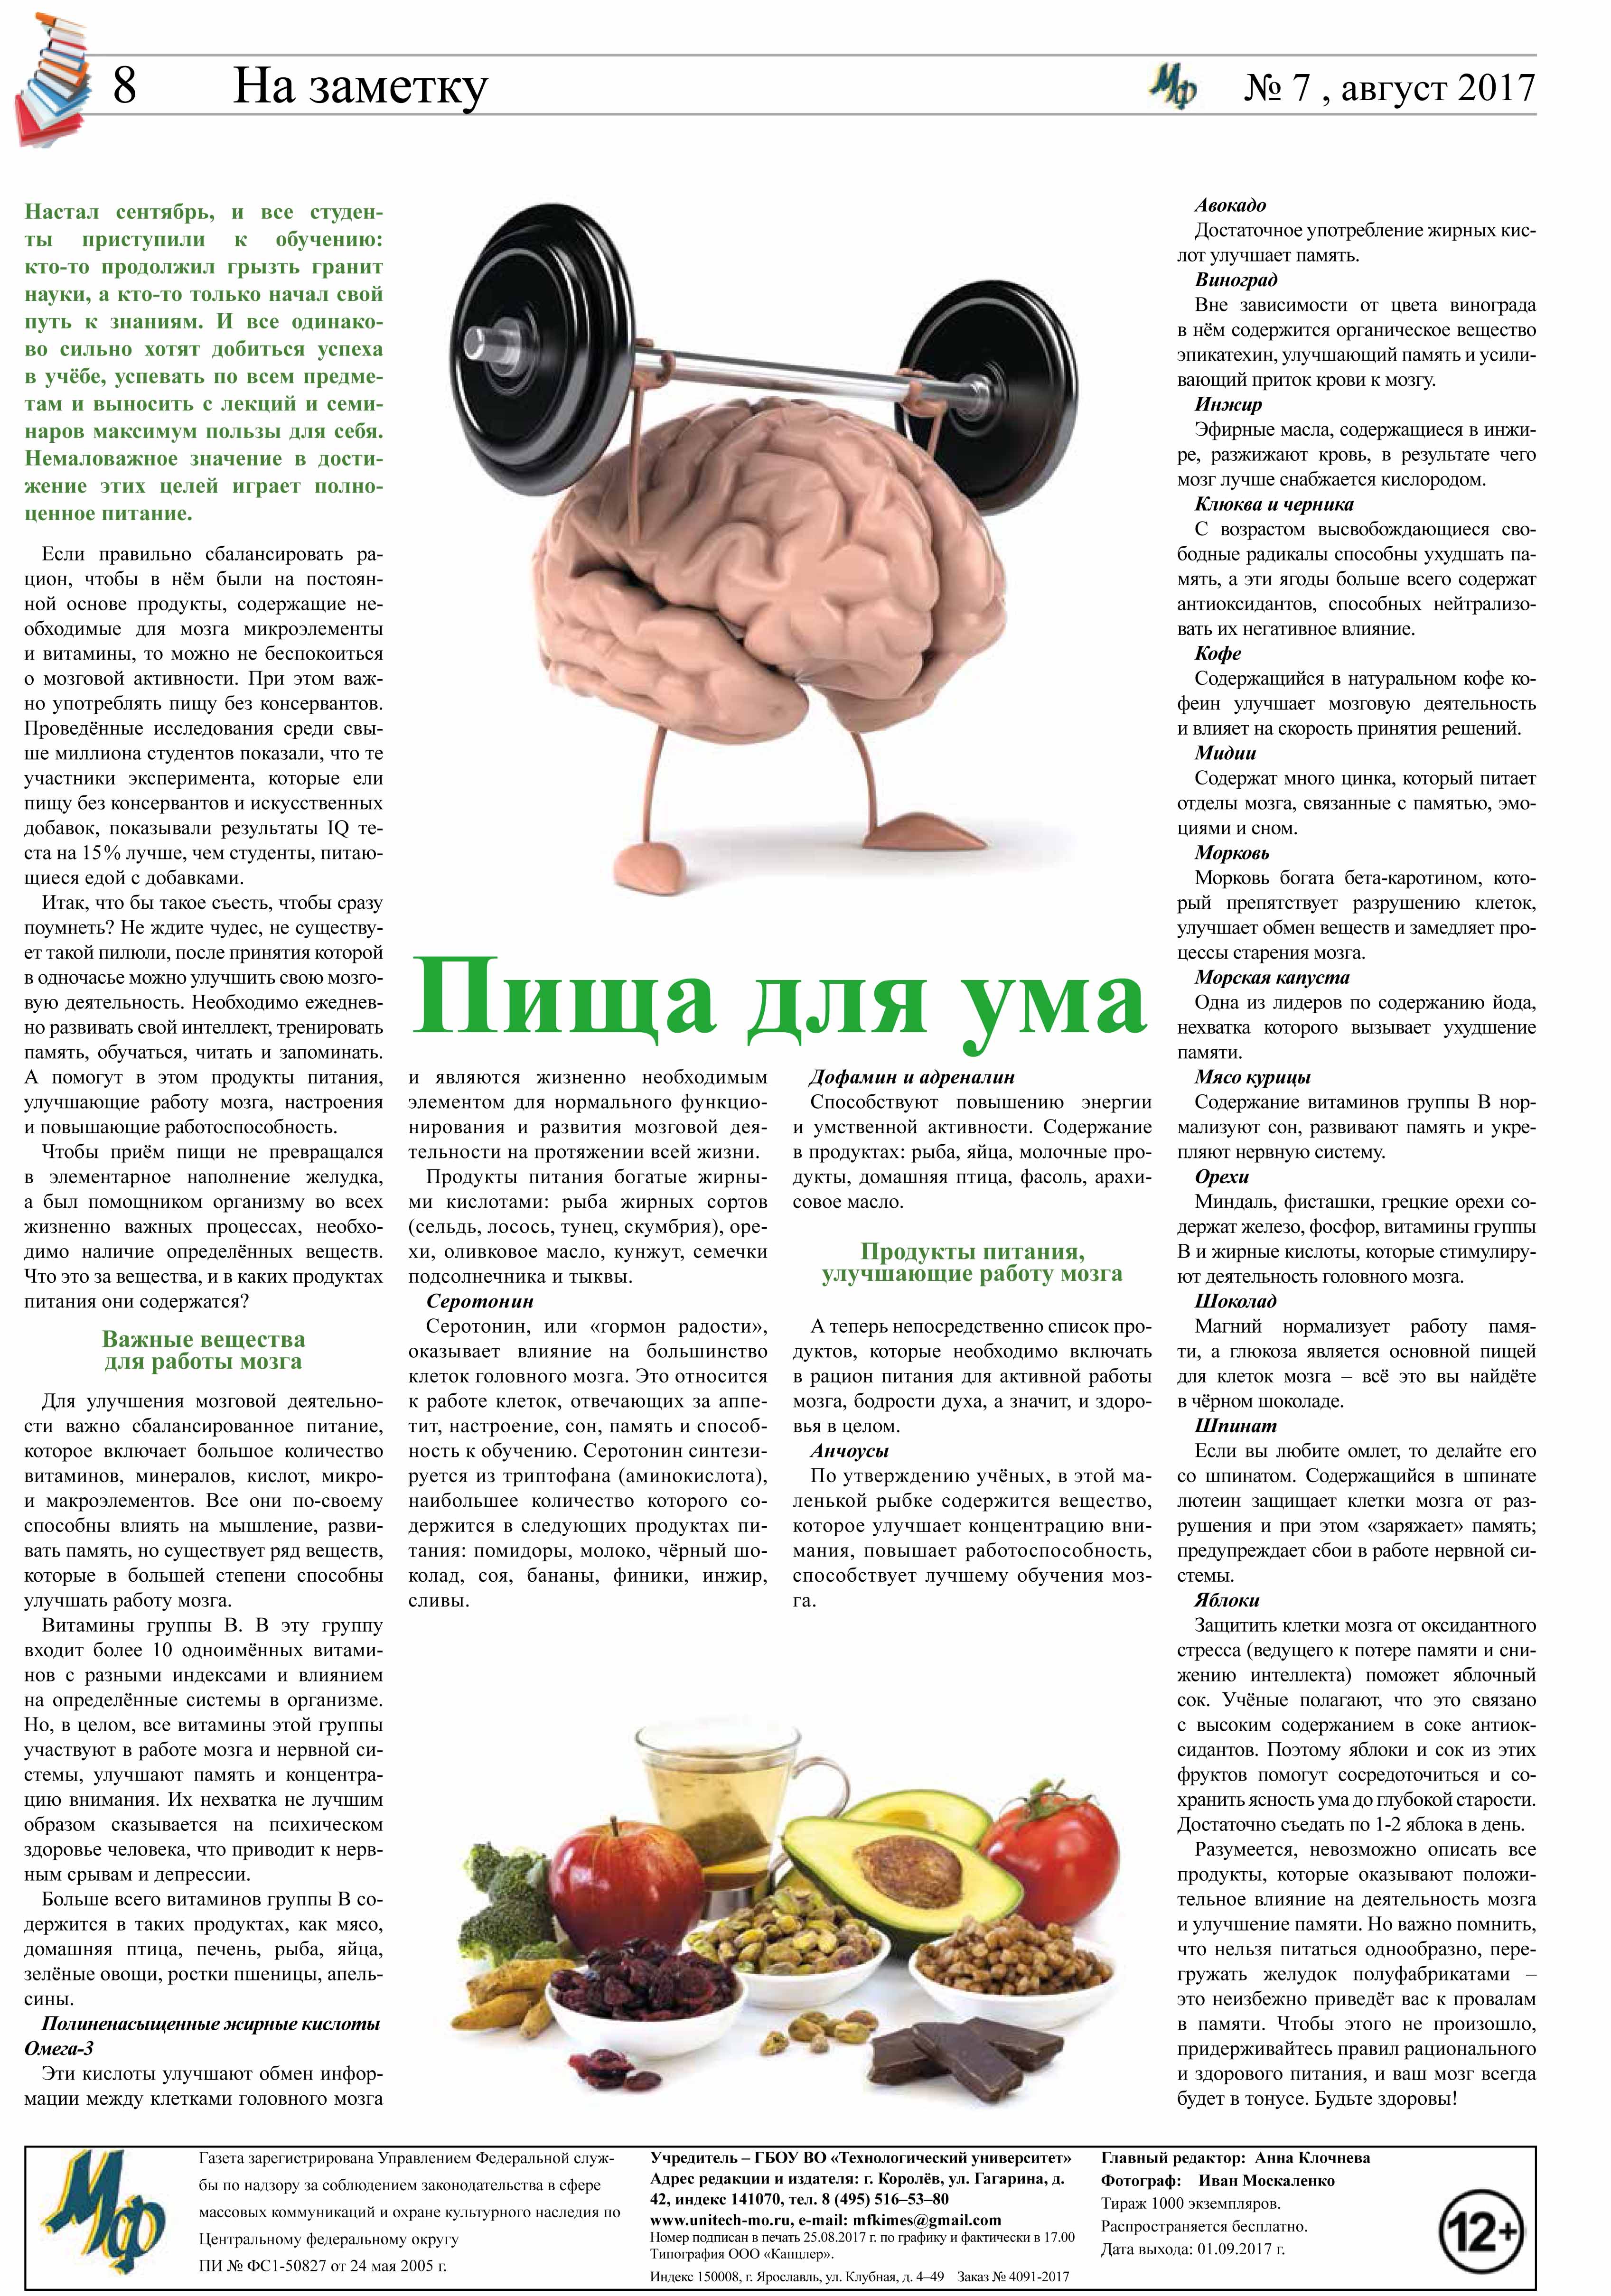 Продукты для улучшение мозга. Продукты для мозга и памяти. Влияние питания на мозг. Полезная еда для мозга и памяти. Полезная диета для мозга.